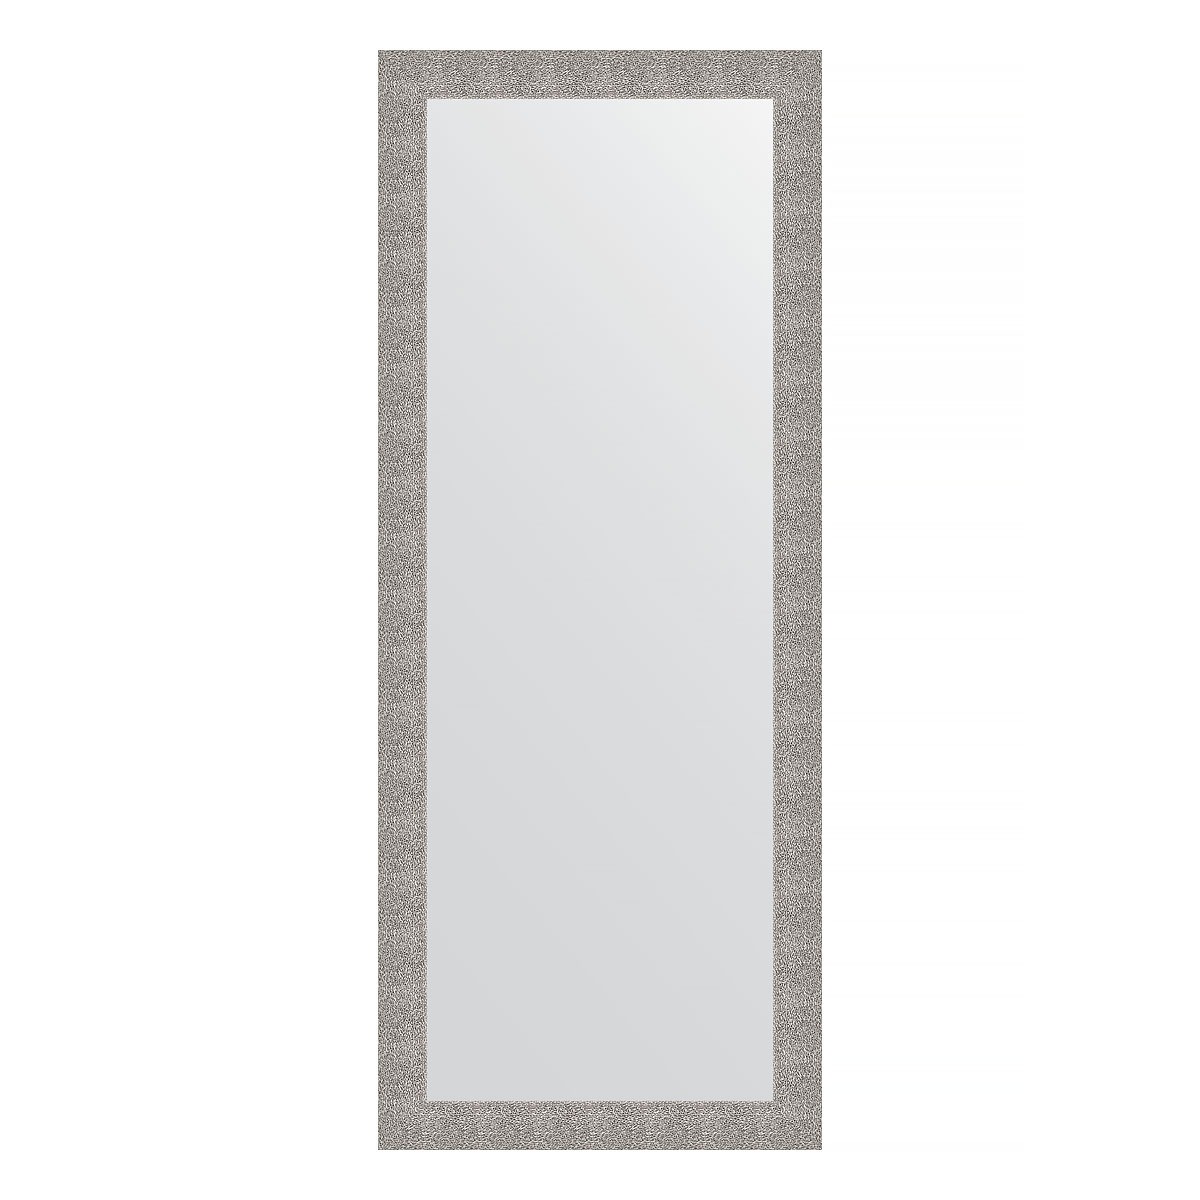 Зеркало напольное в багетной раме Evoform чеканка серебряная 90 мм 81x201 см зеркало напольное в багетной раме чеканка серебряная 90 мм 81x201 см